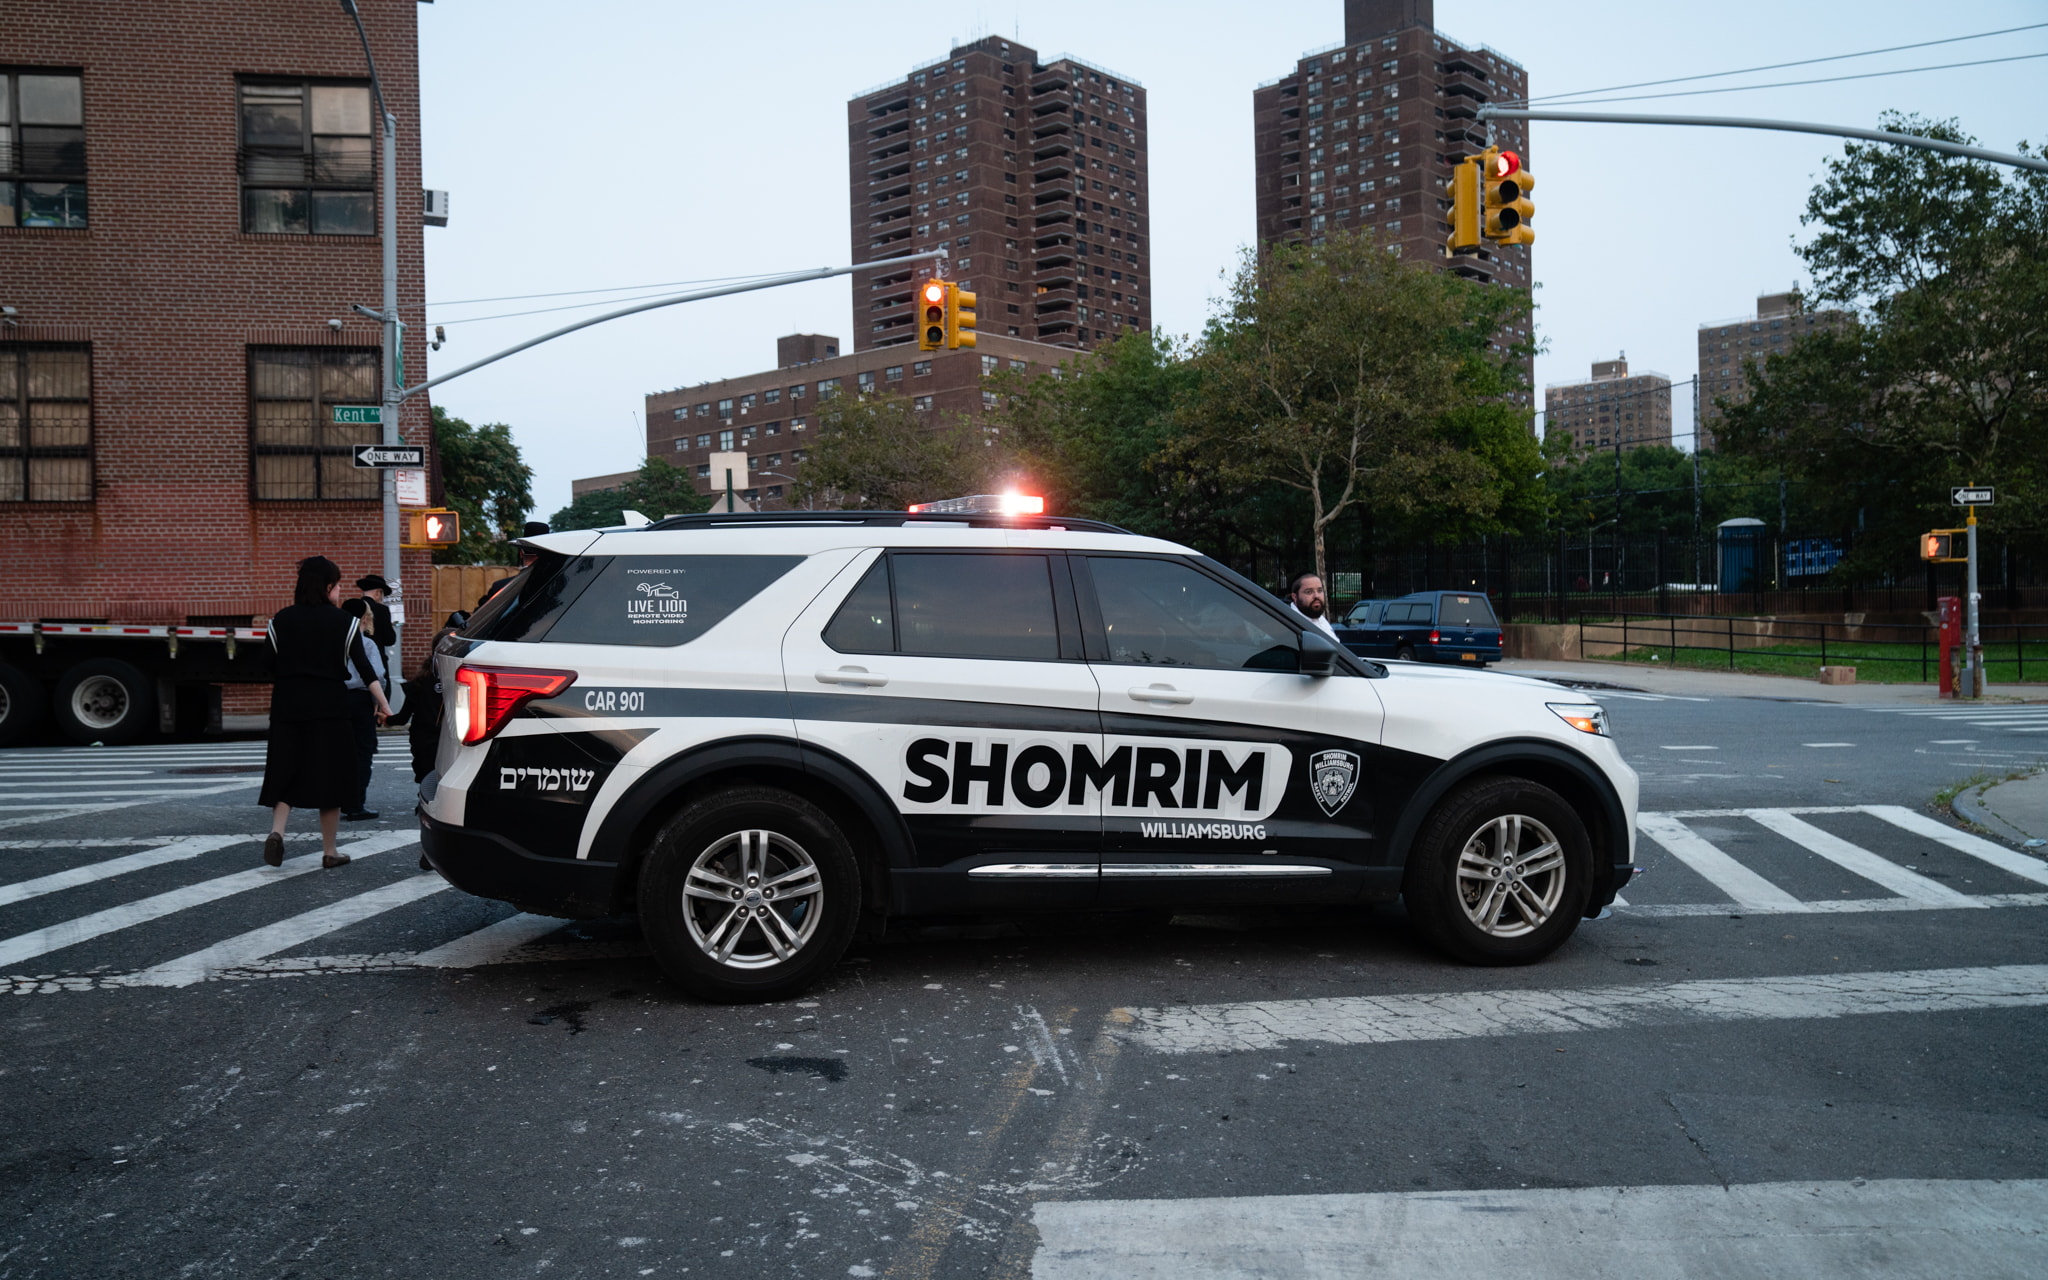 El grupo de defensa del vecindario Shomrim en el barrio de Williamsburg en Brooklyn, Nueva York, el 15 de septiembre de 2021. (Luke Tress/Times of Israel)